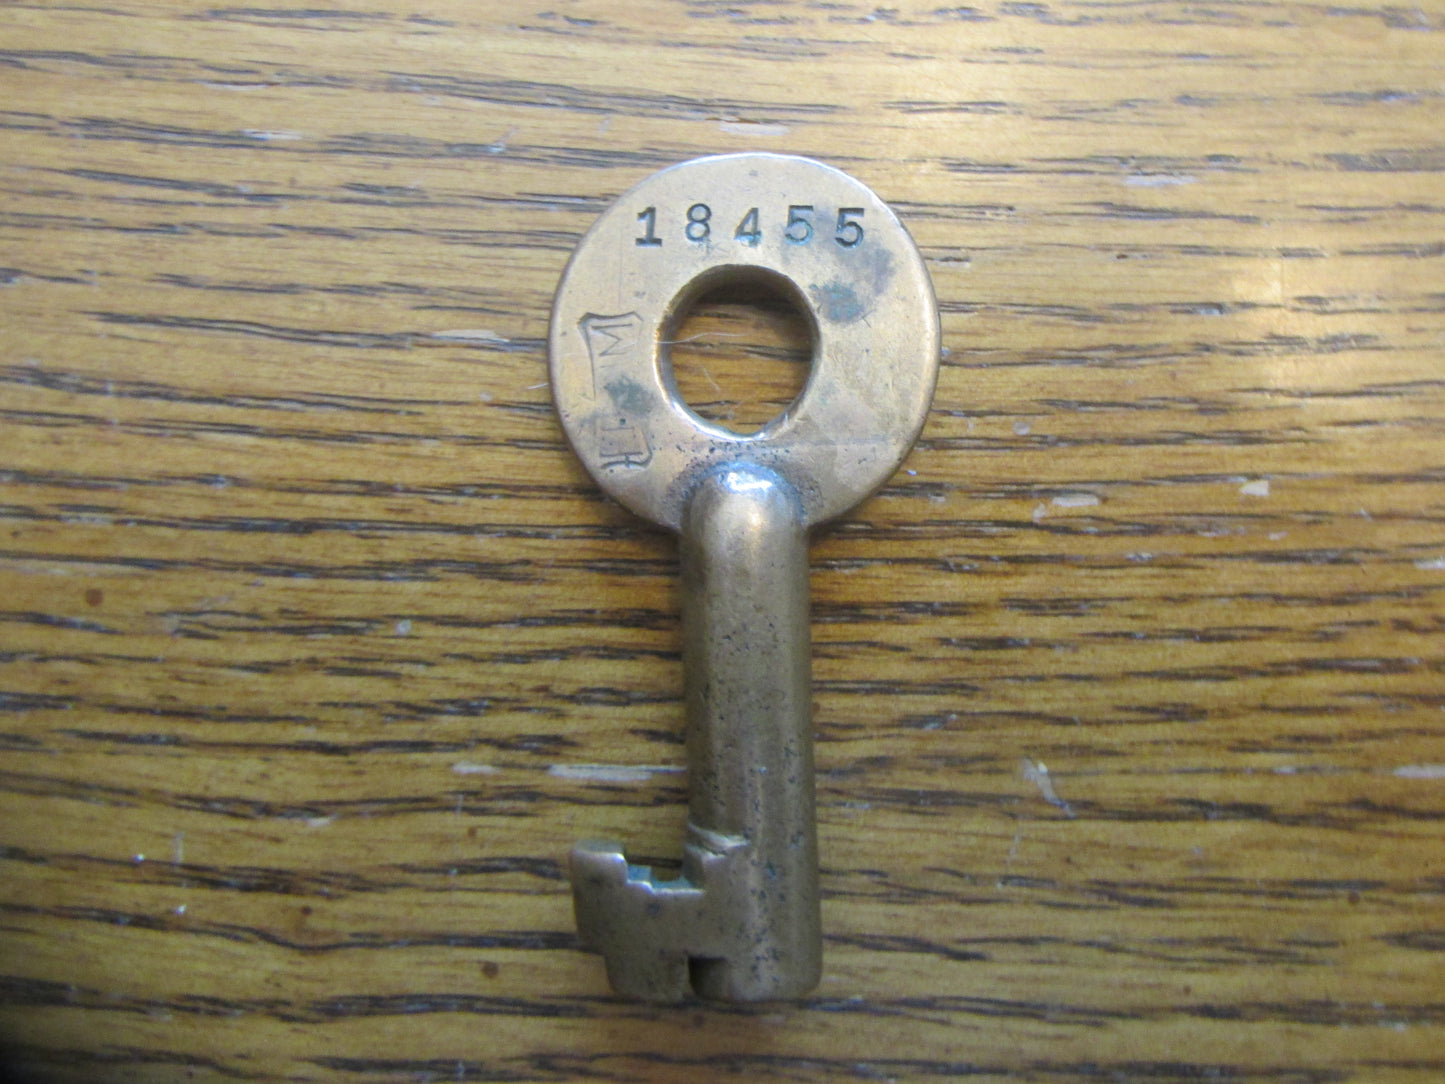 CCC & St Louis key